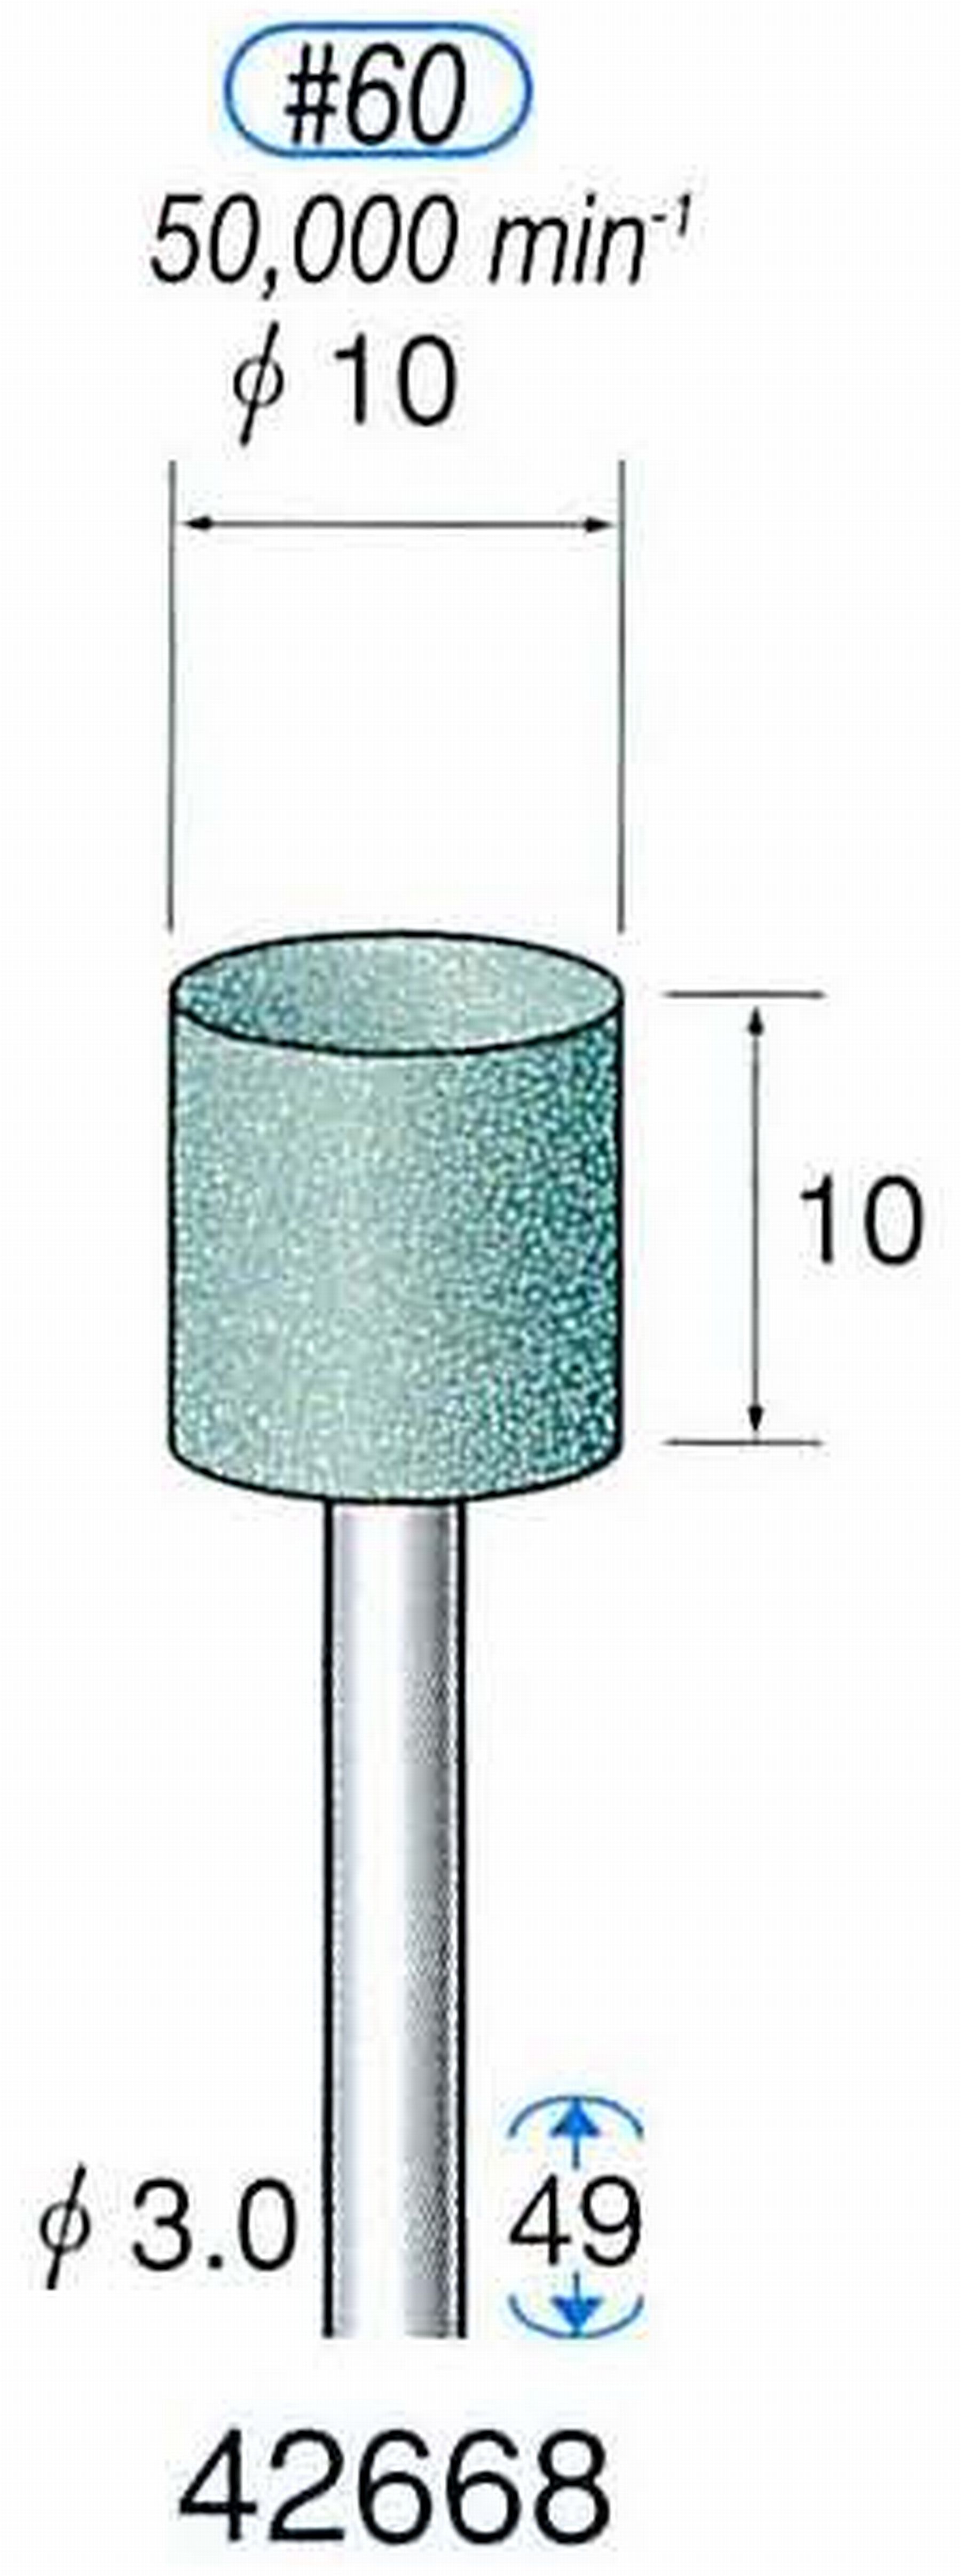 ナカニシ/NAKANISHI 軸付砥石(GC砥粒) グリーン砥石 軸径(シャンク) φ3.0mm 42668